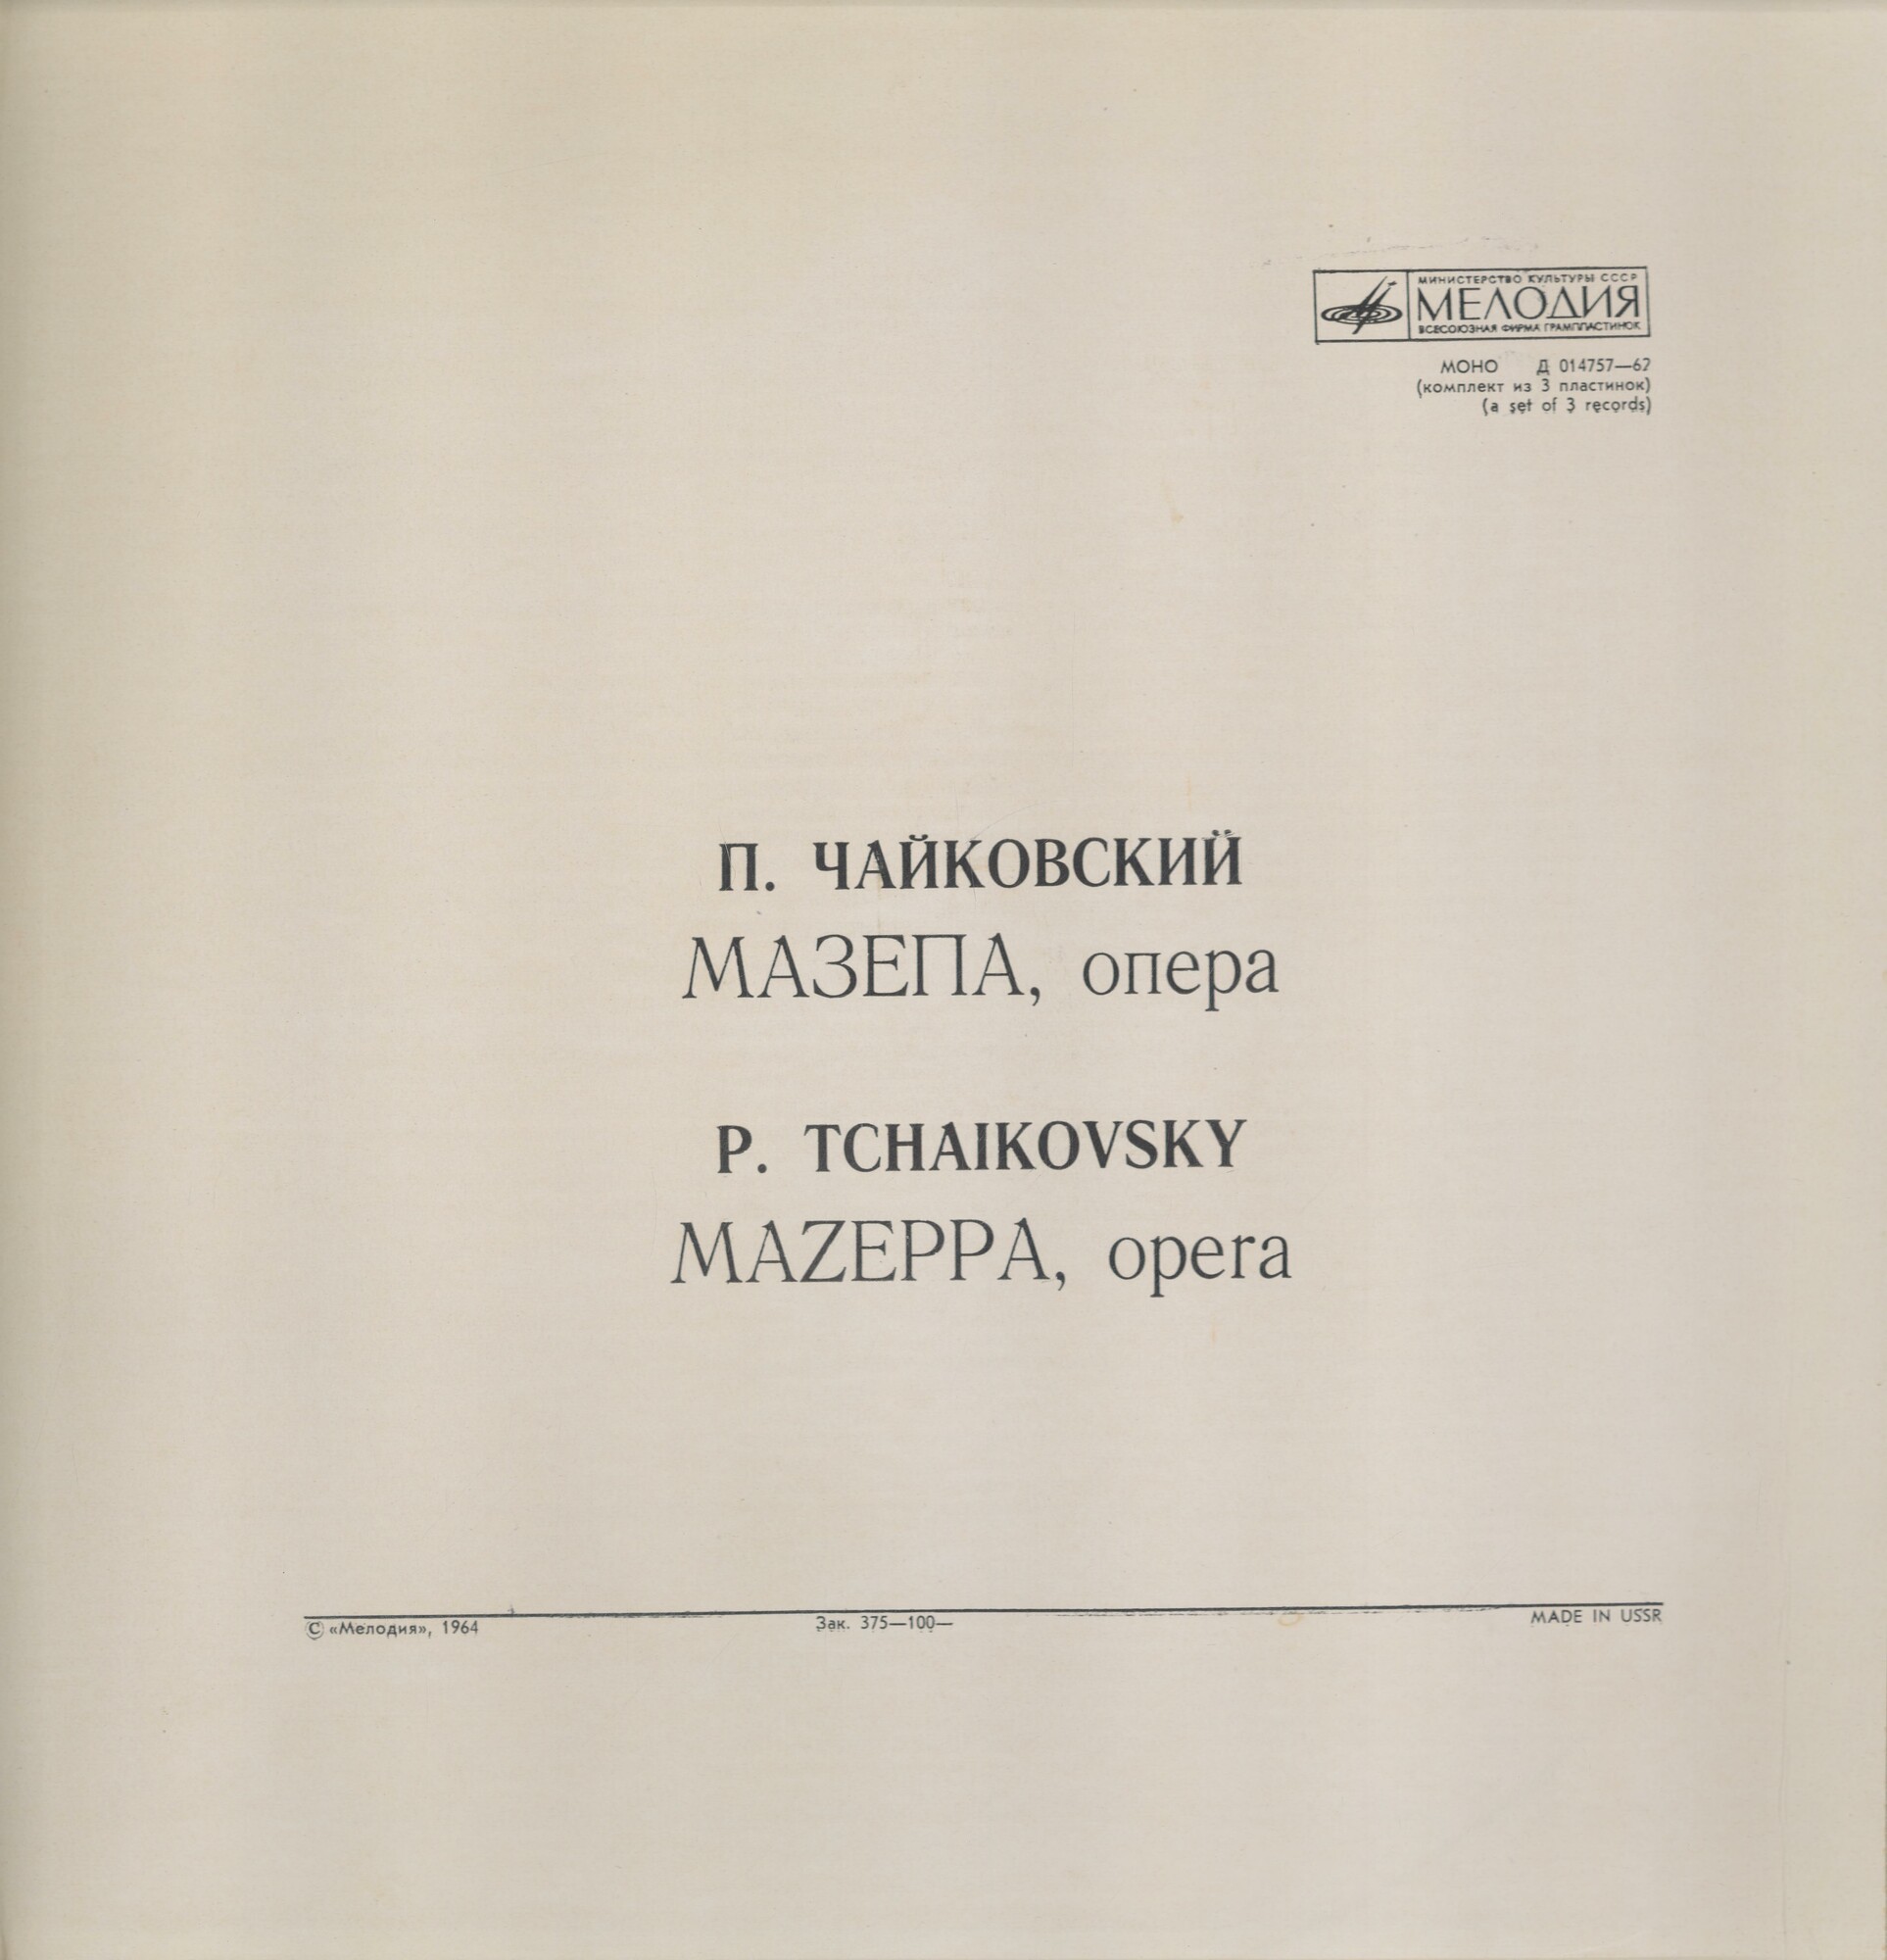 П. ЧАЙКОВСКИЙ (1840-1893) "Мазепа": опера в 3 д. (ГАБТ, В. Небольсин)